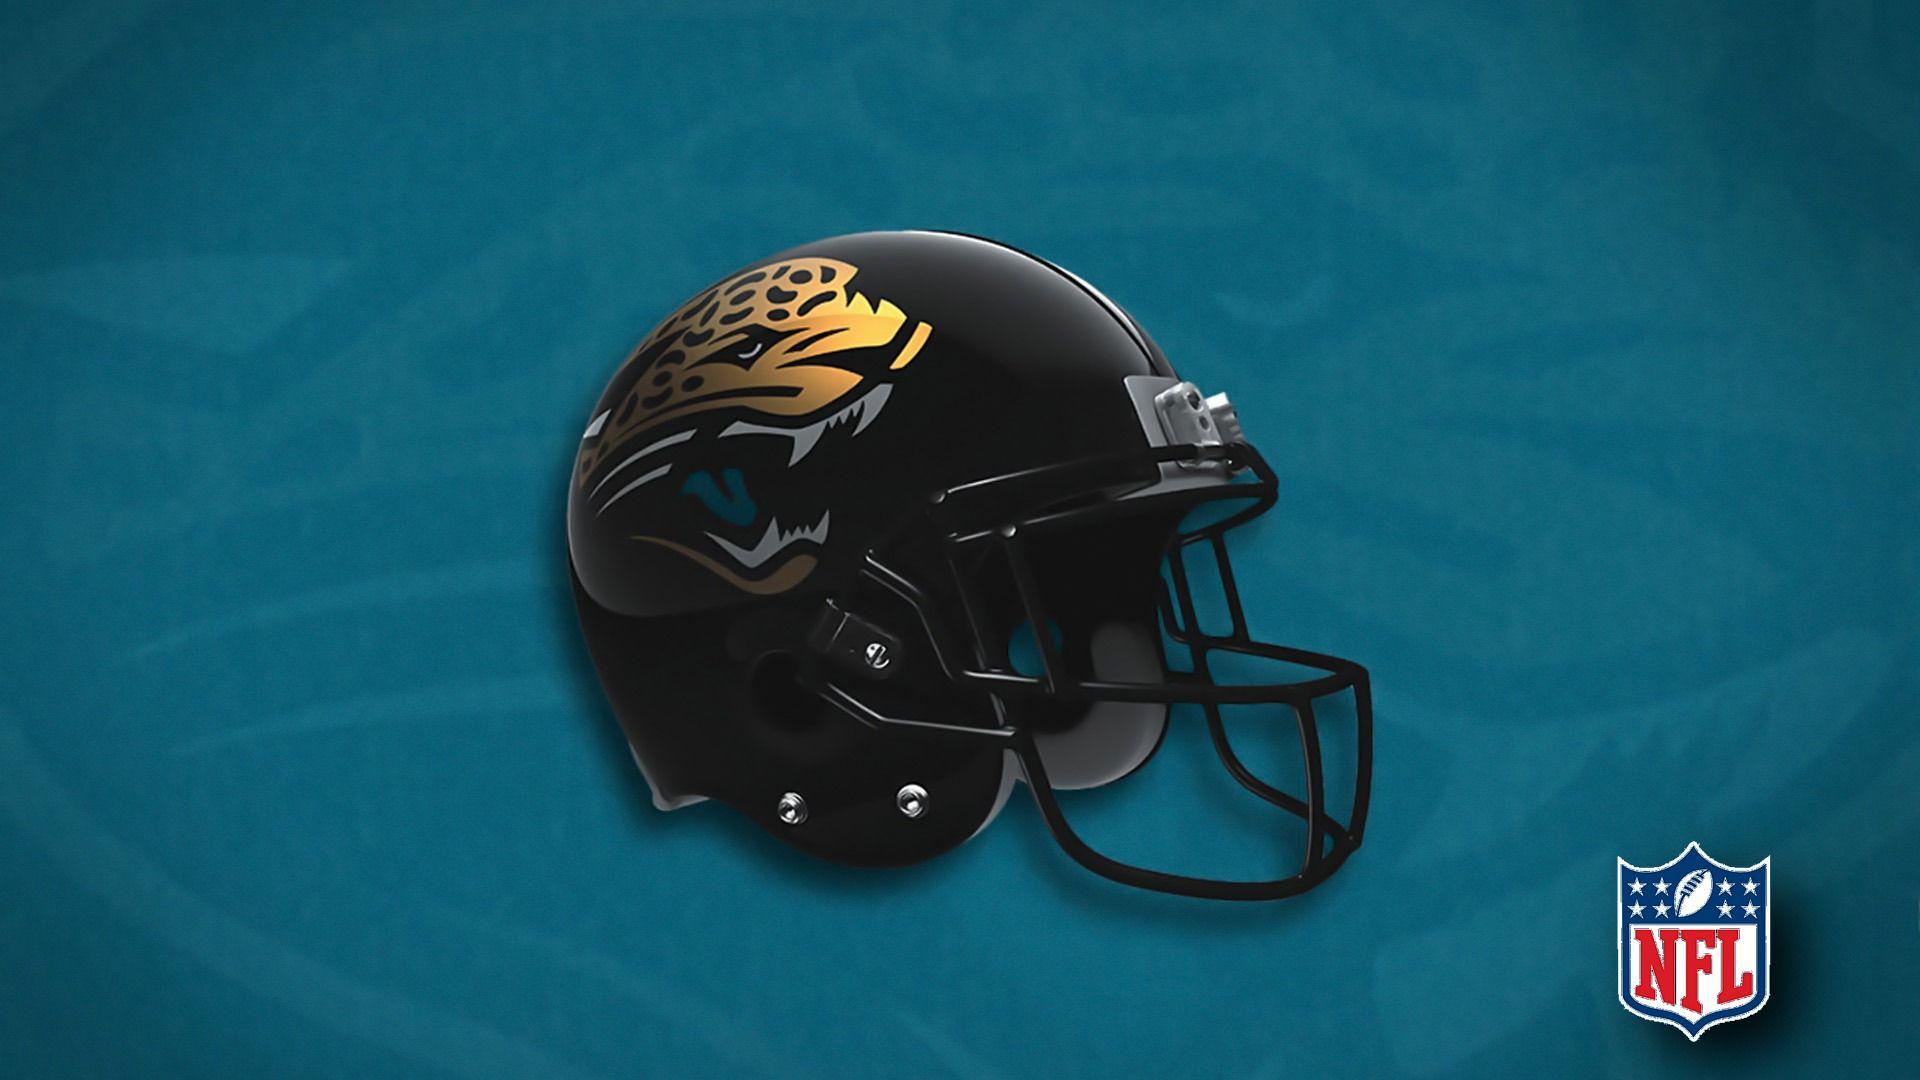 Funny NFL Jaguars Logo - Jacksonville Jaguars / Nfl 1920x1080 Hd Images